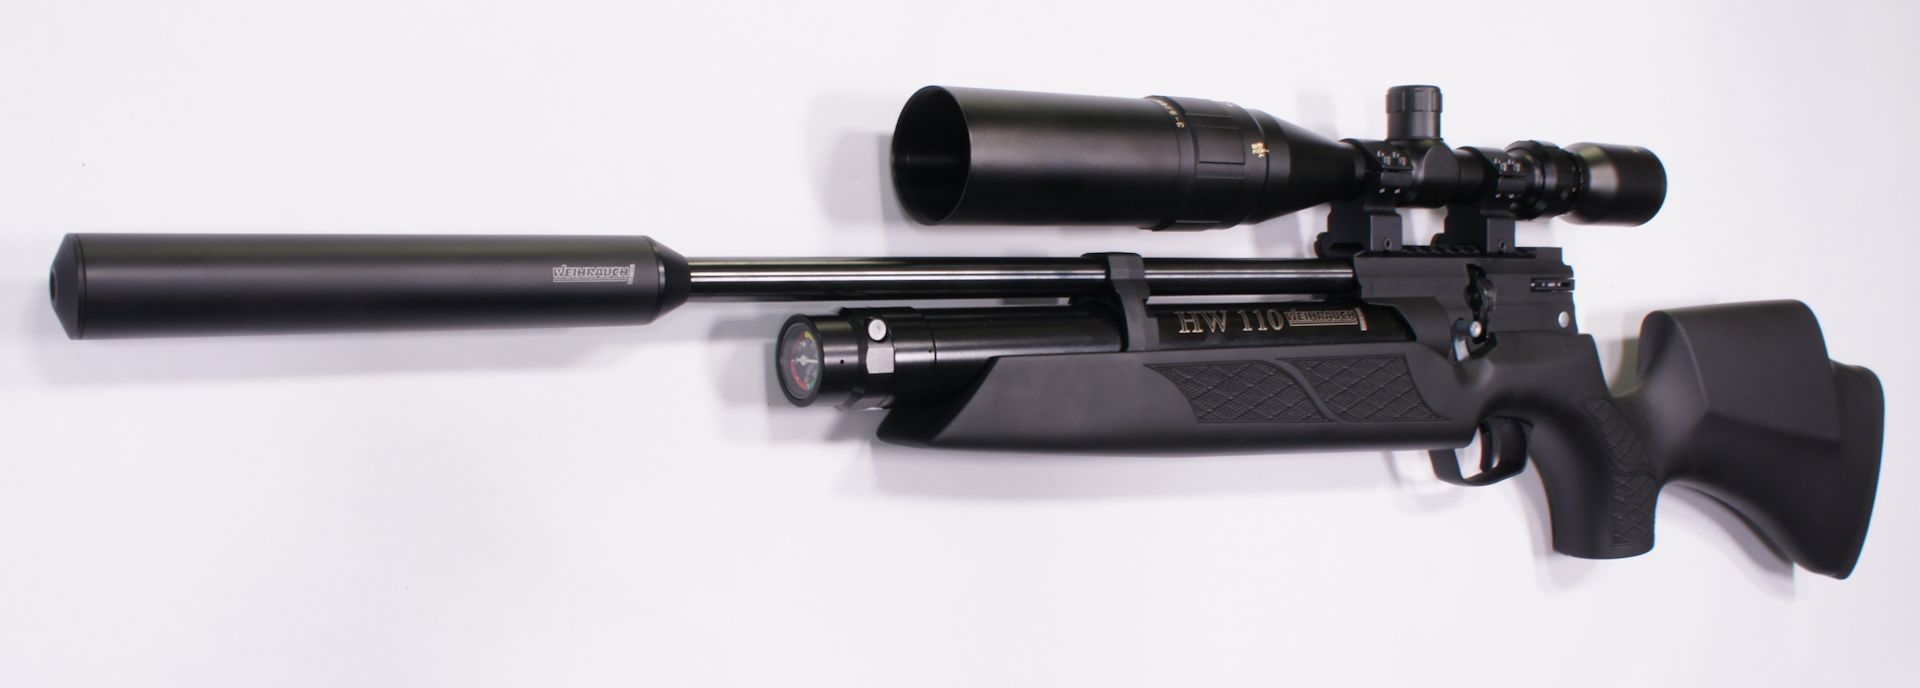 Montagebeispiel: erwerbsscheinpflichtiges Luftgewehr Weihrauch HW 110 ST mit Optik Weihrauch 3-9x44 